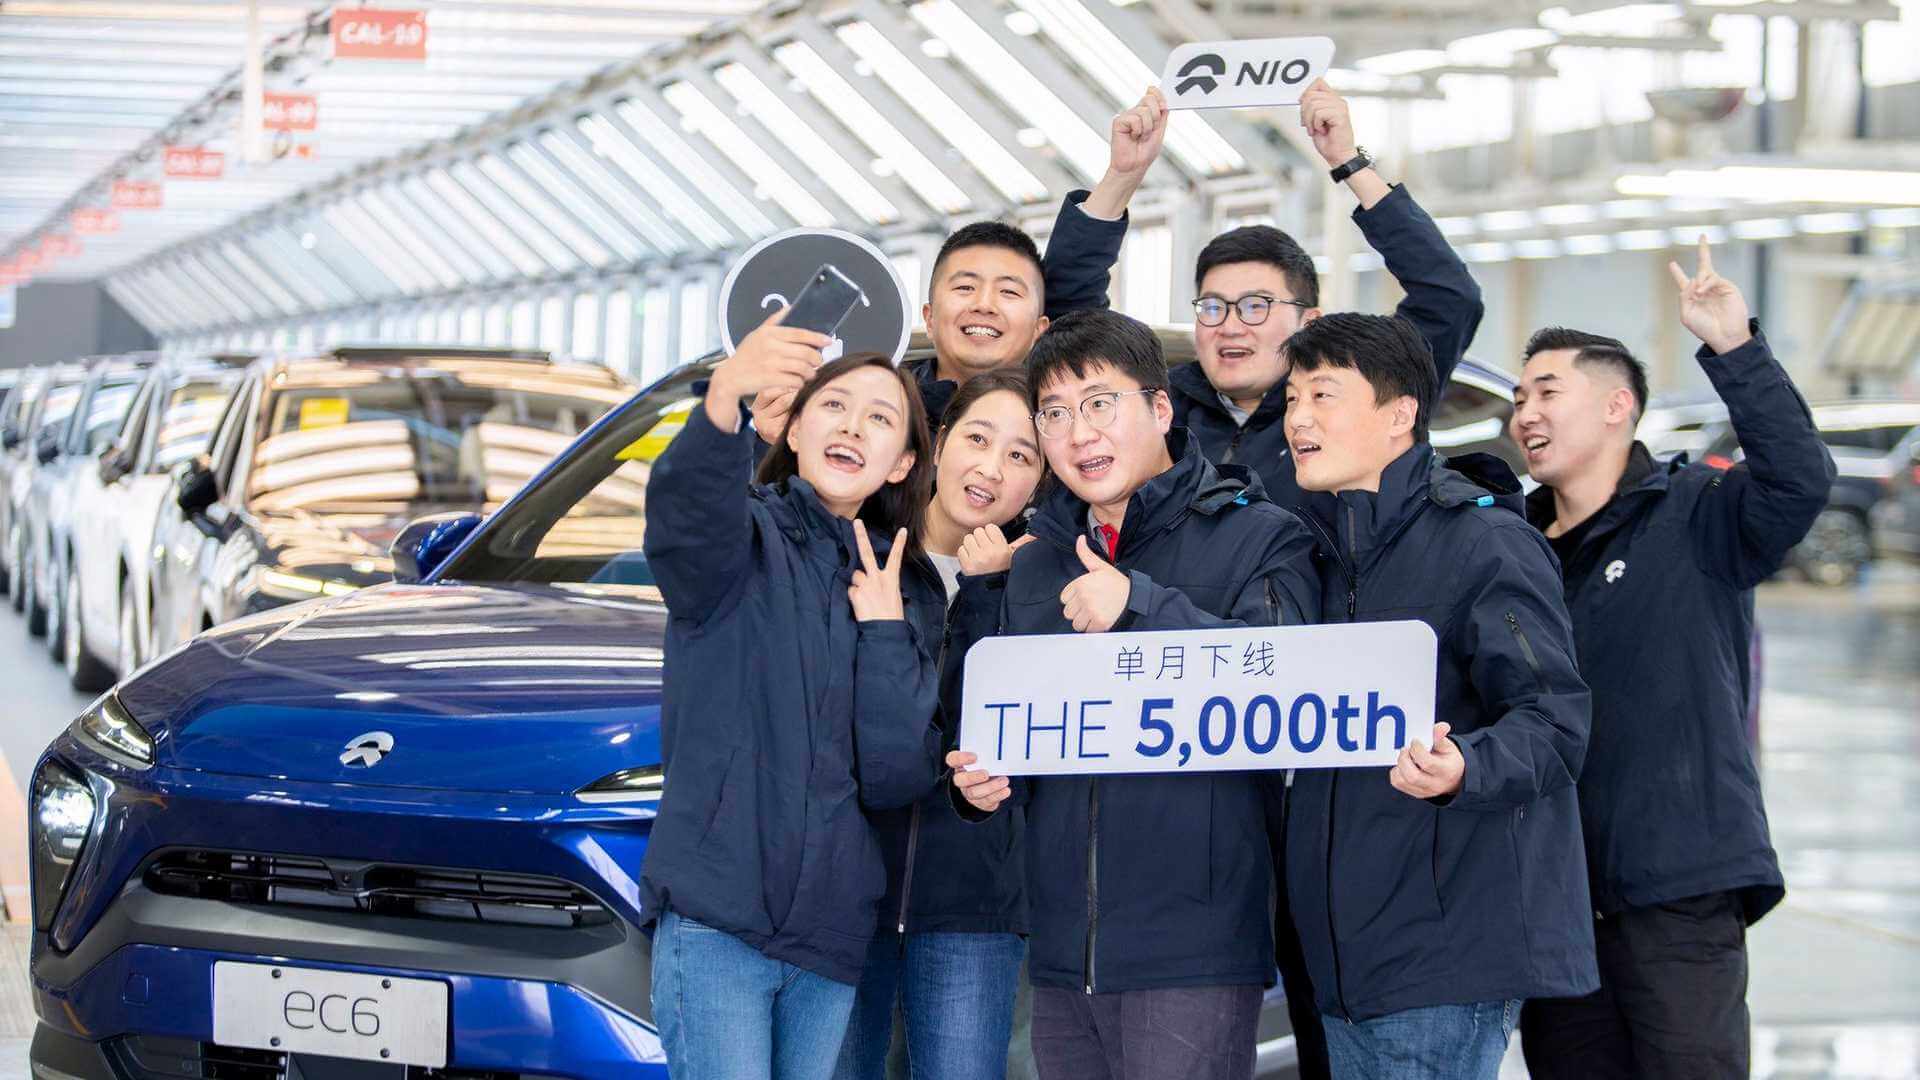 NIO объявила, что 29 октября с конвейера сошел ее 5000-й электромобиль и что ежемесячный объем производства впервые превысил 5000 единиц